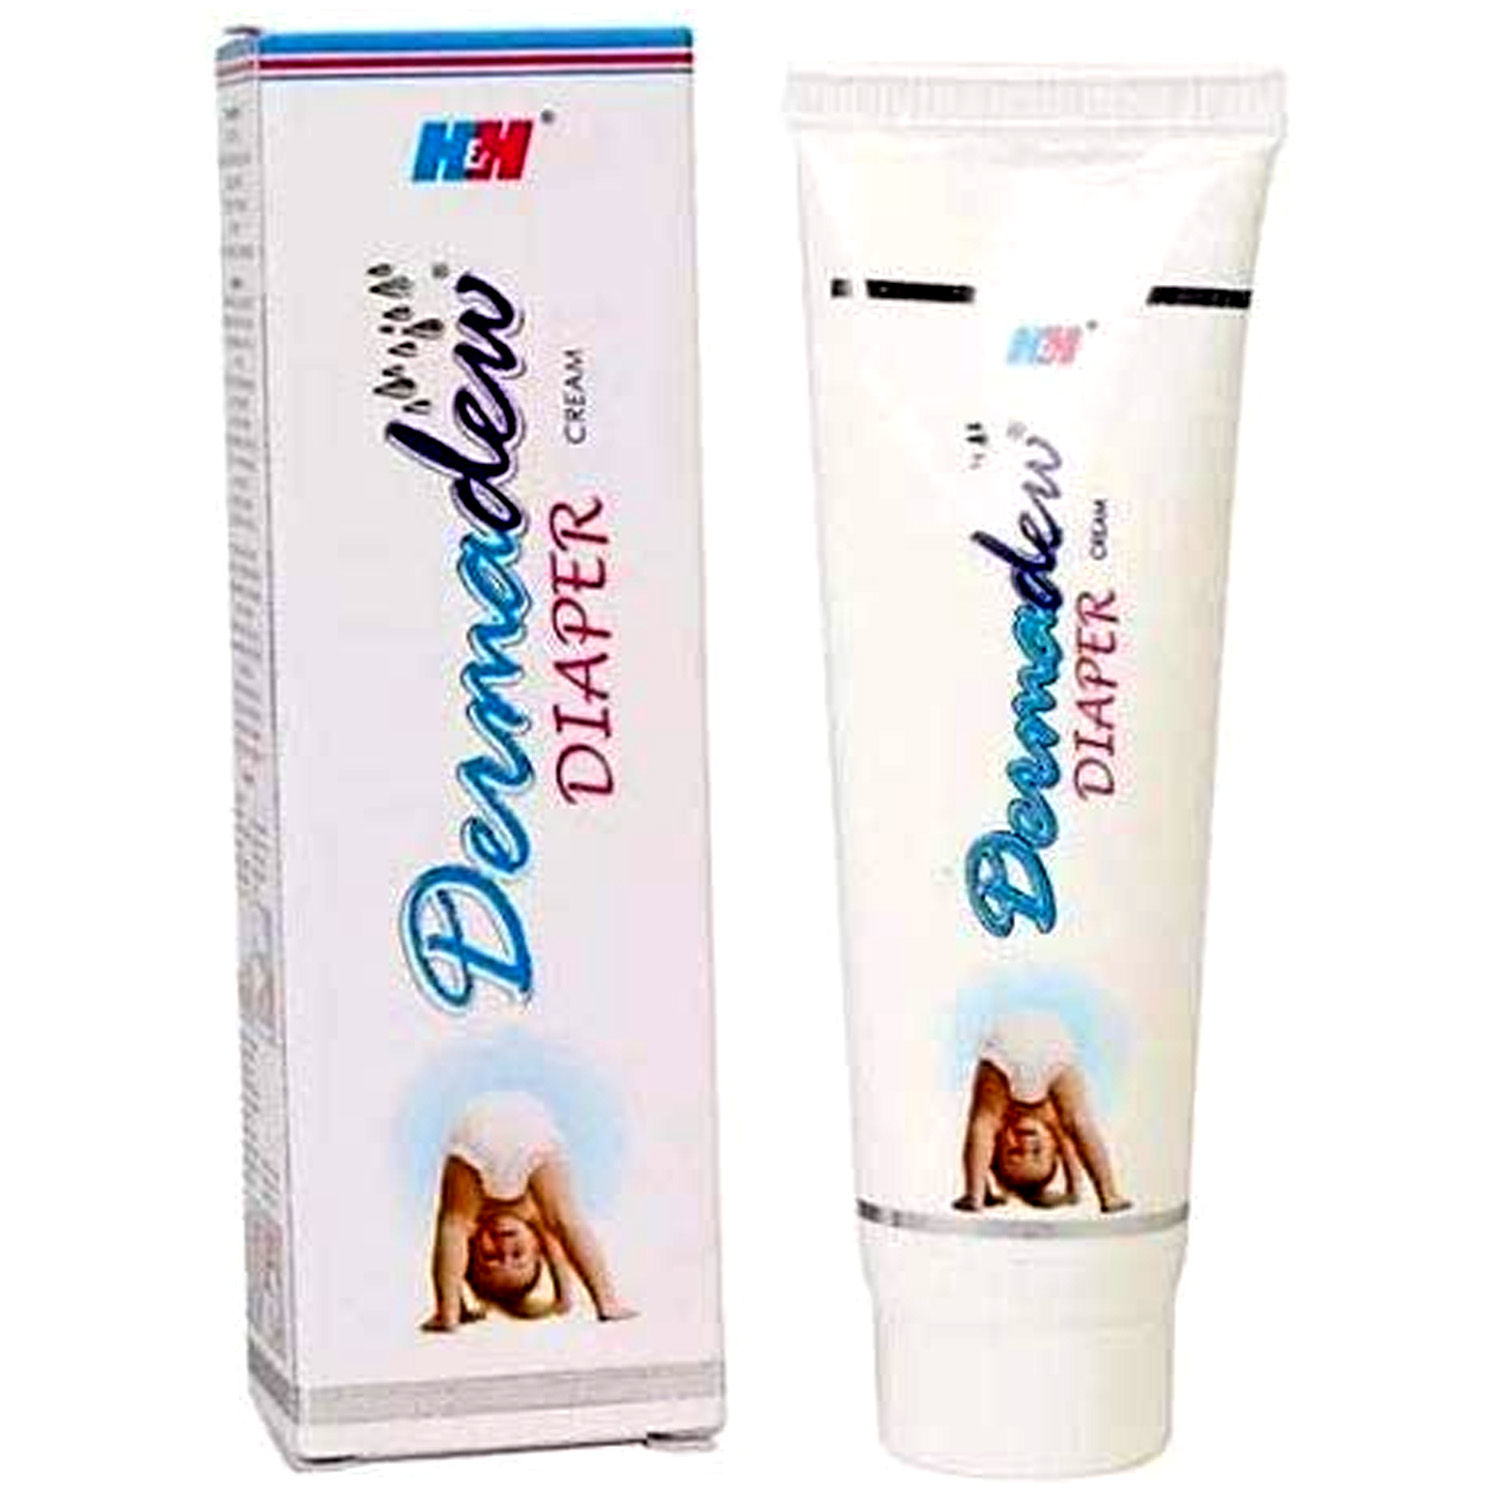 Buy Dermadew Diaper Cream, 50 gm Online